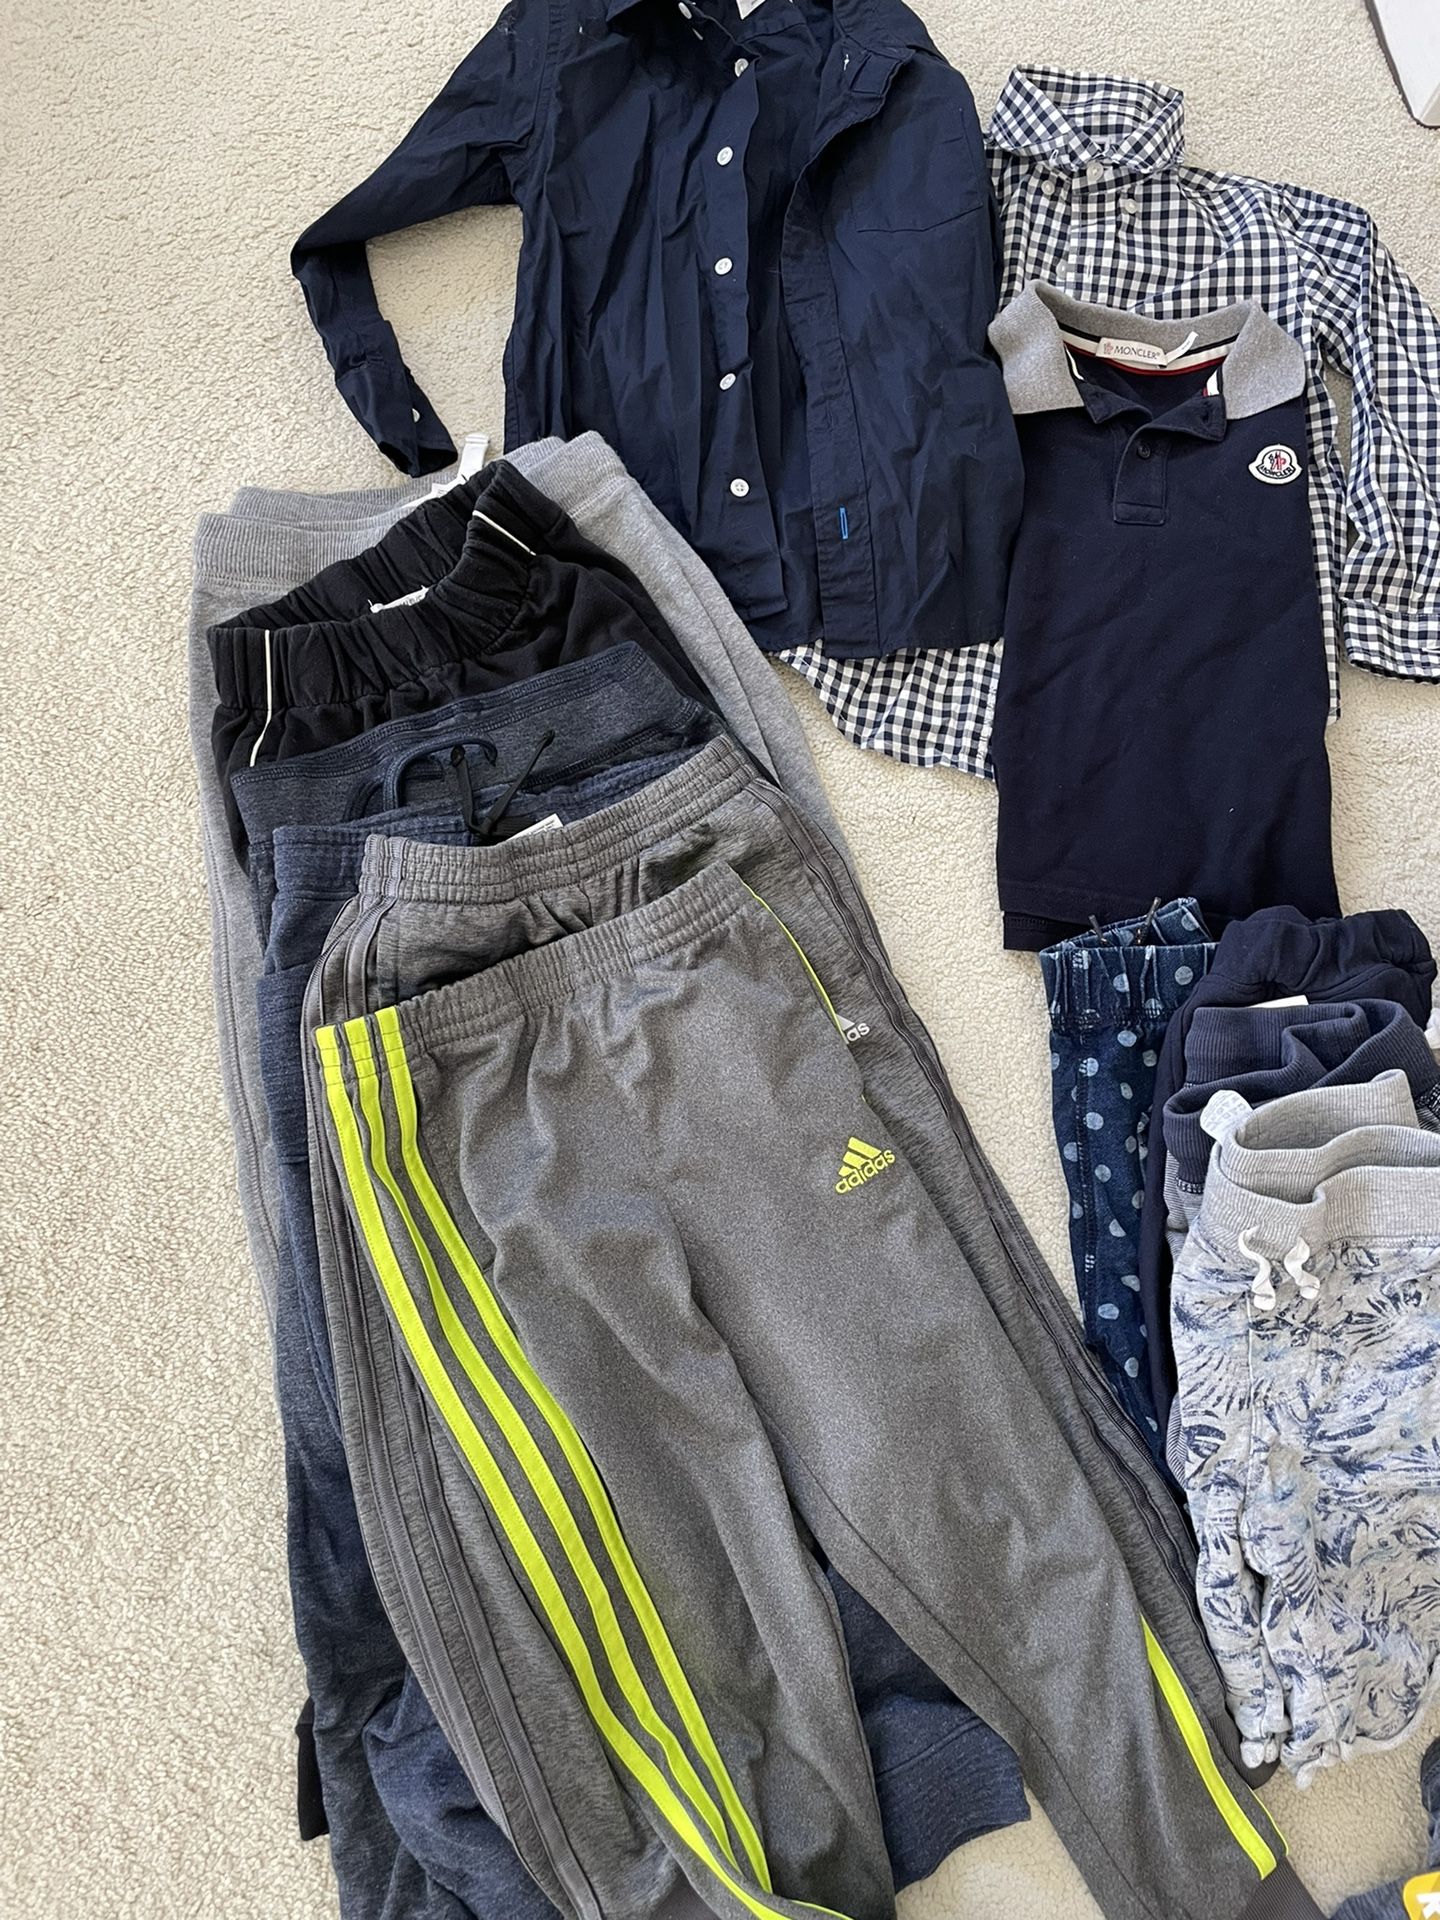 Boys Clothing - Nike, Adidas, Moncler, Underarmor, Splendid Size 5/6